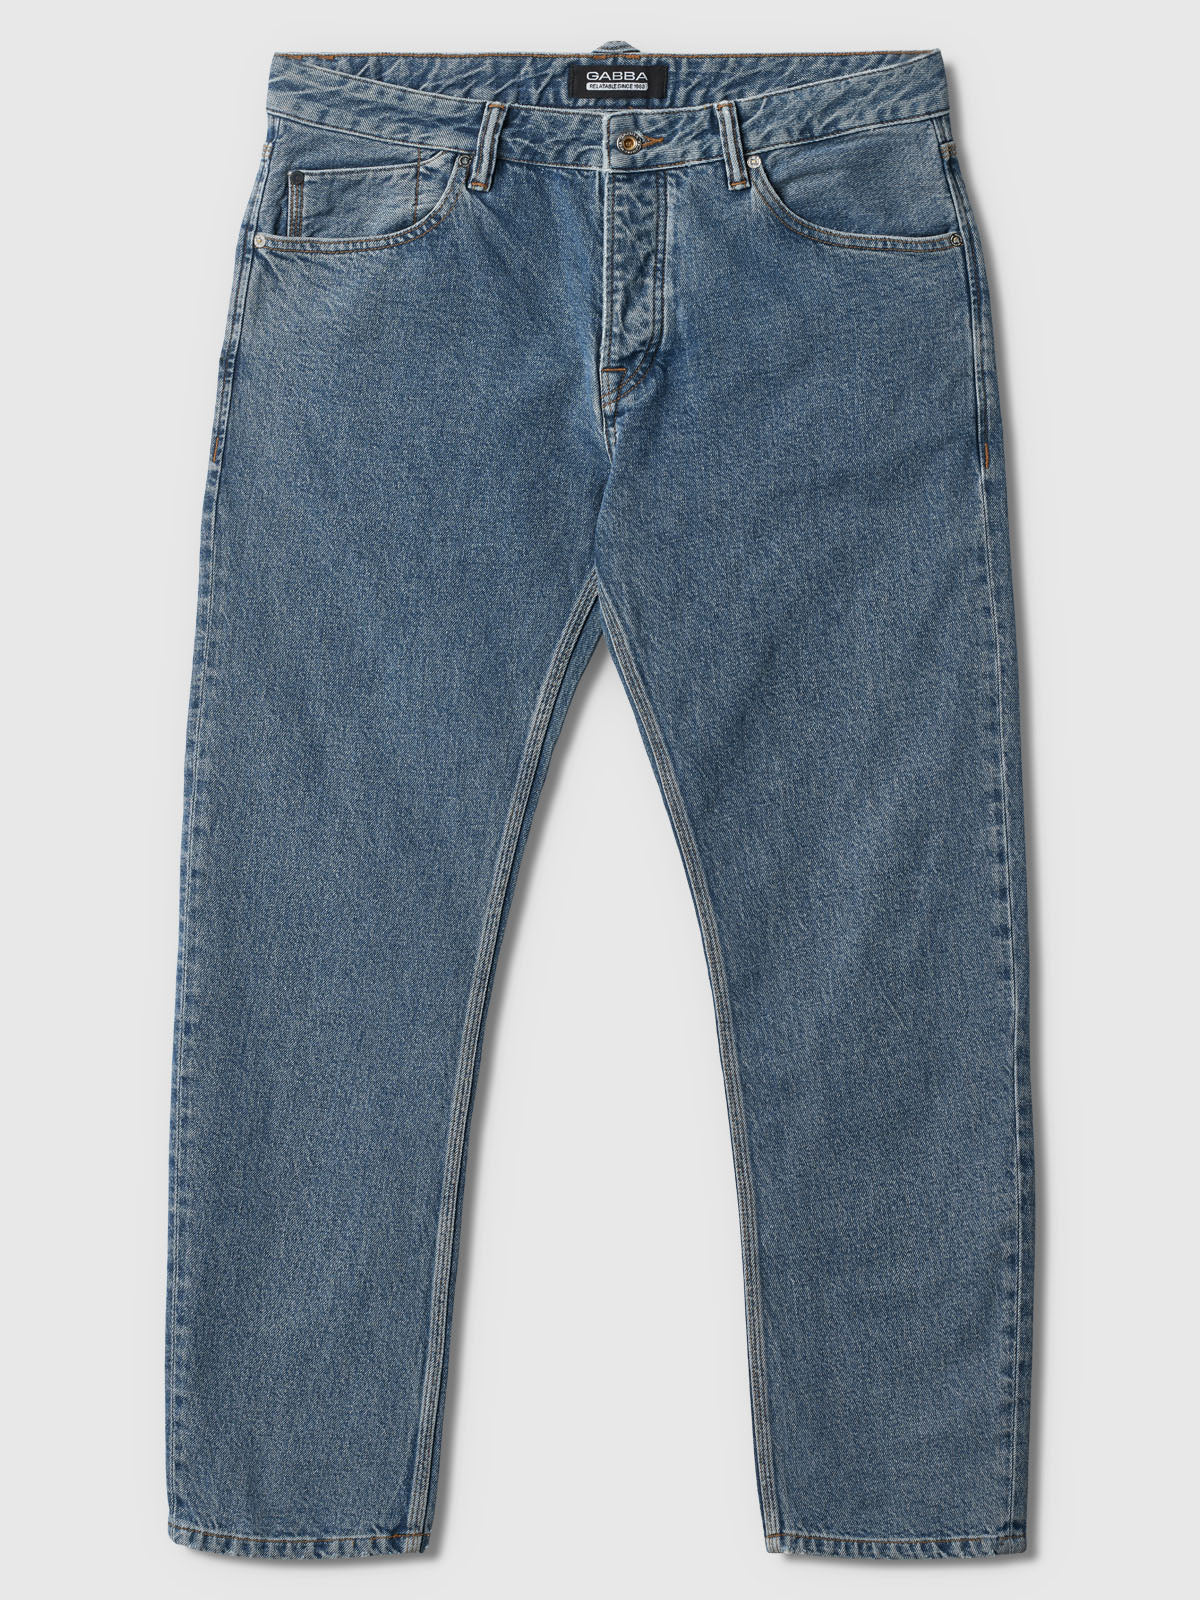 Carl jeans mid blue K4772 - Gabba